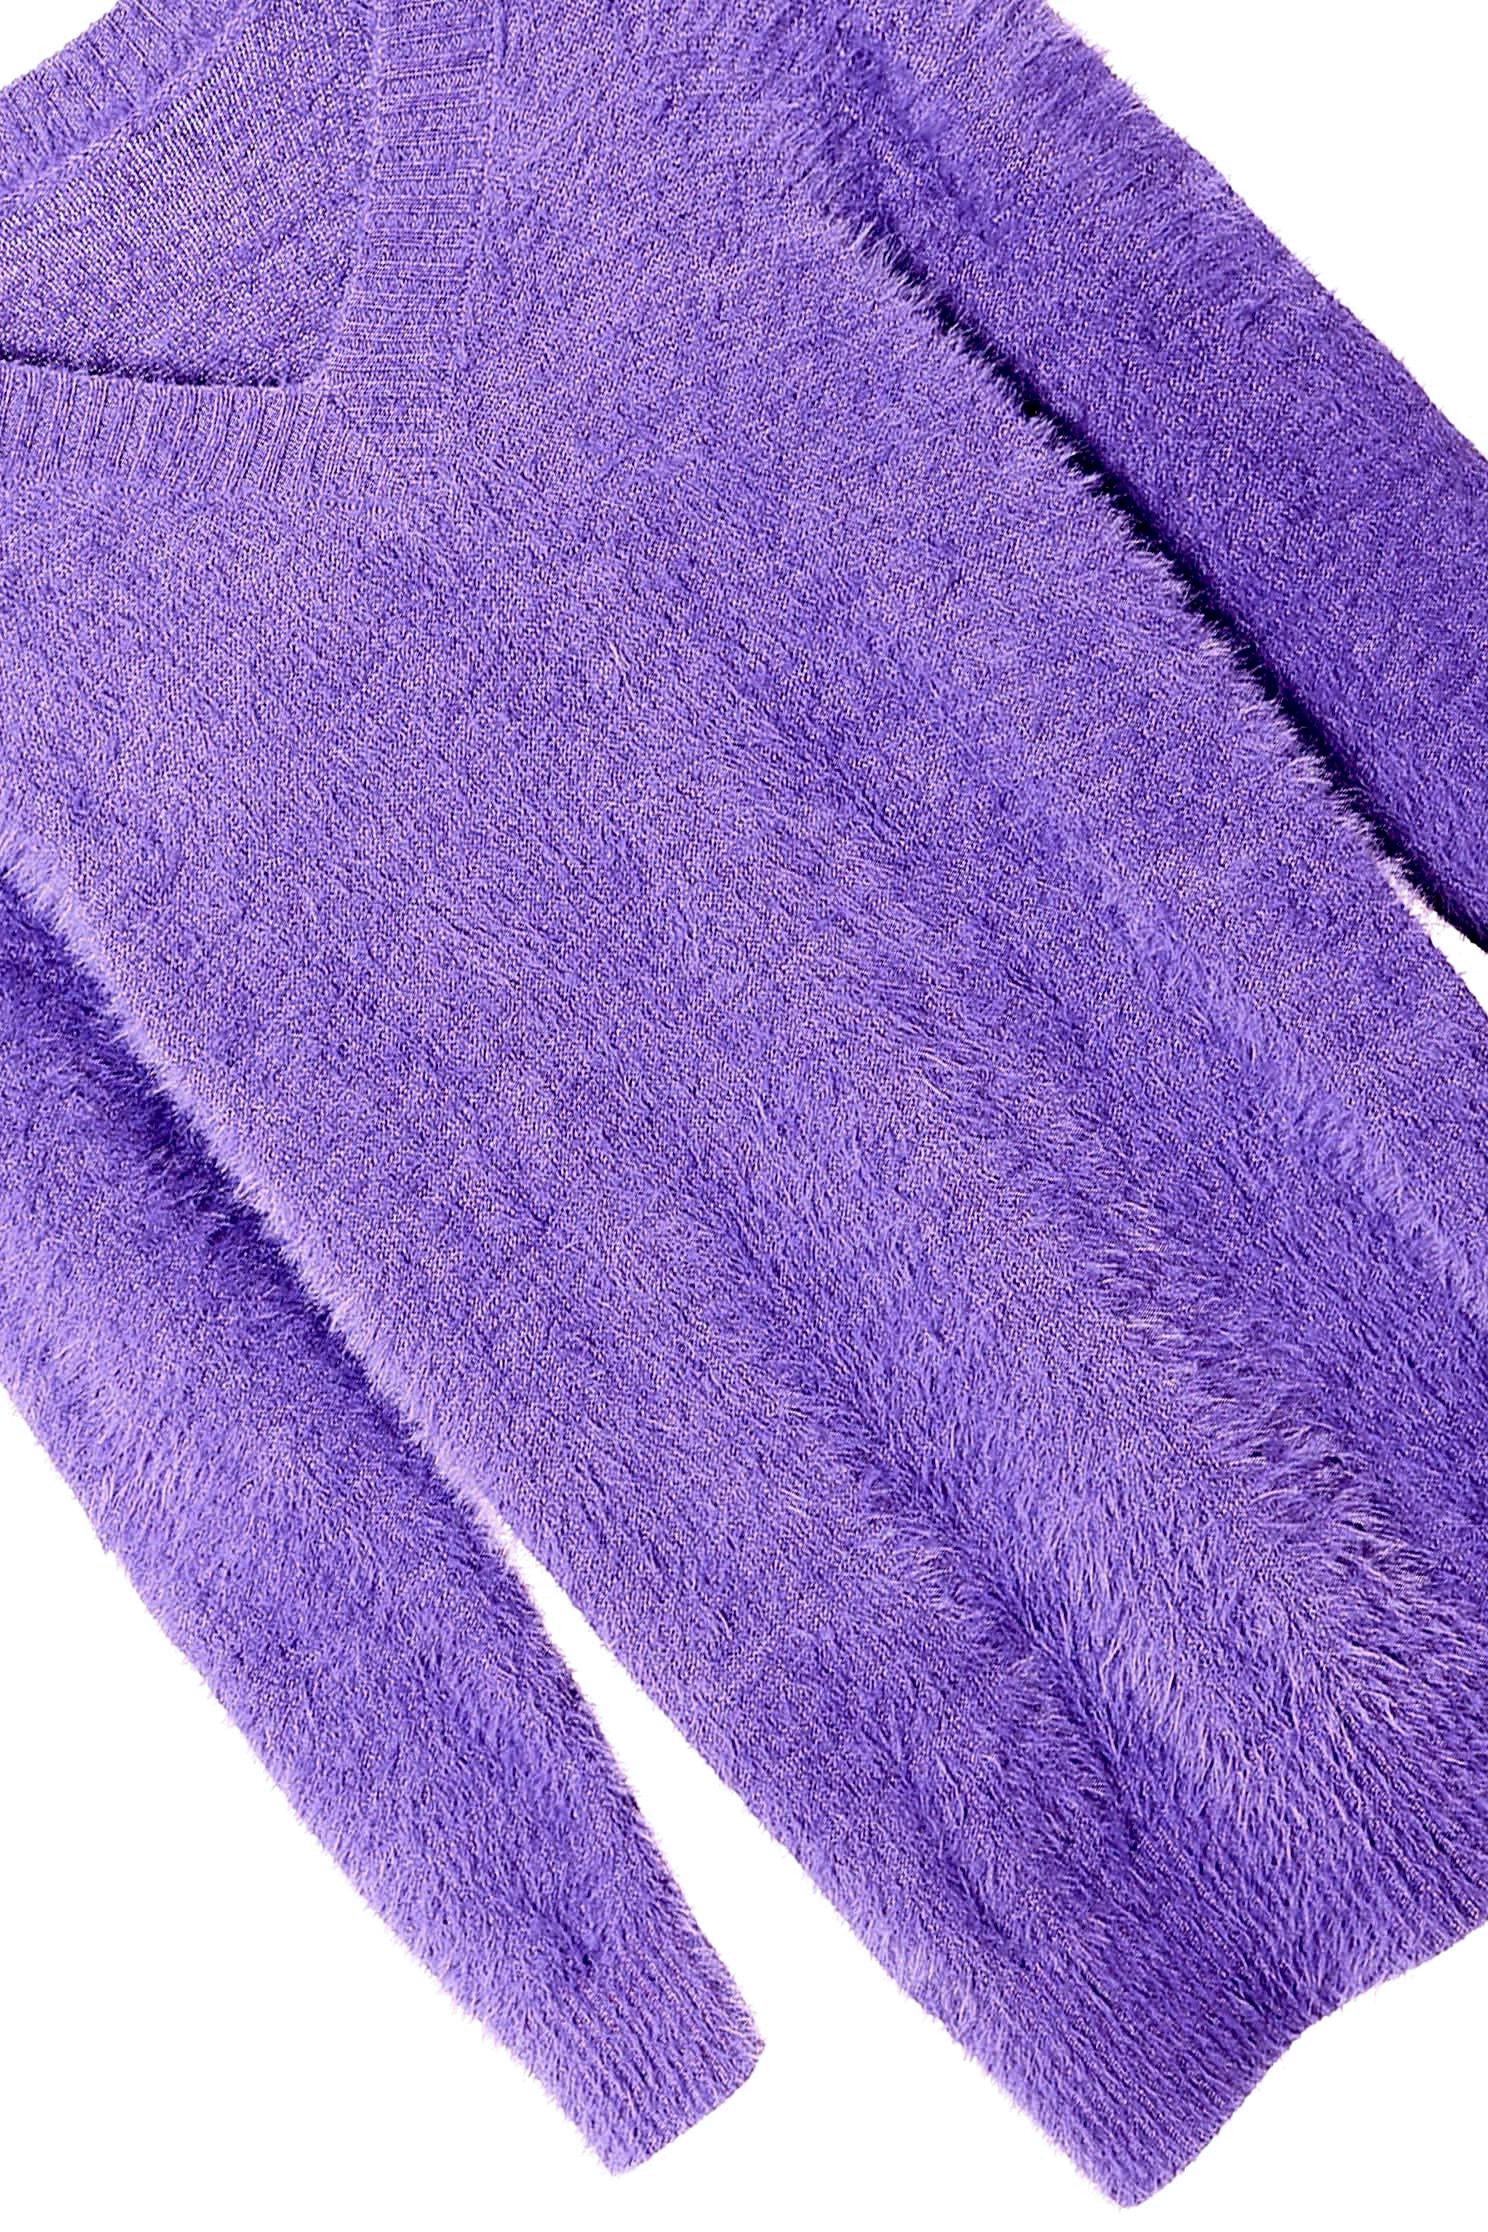 蝴蝶蘭紫針織長上衣蝴蝶蘭紫針織長上衣,上衣,新年開運特輯,秋冬穿搭,約會特輯,針織,針織上衣,針織衫